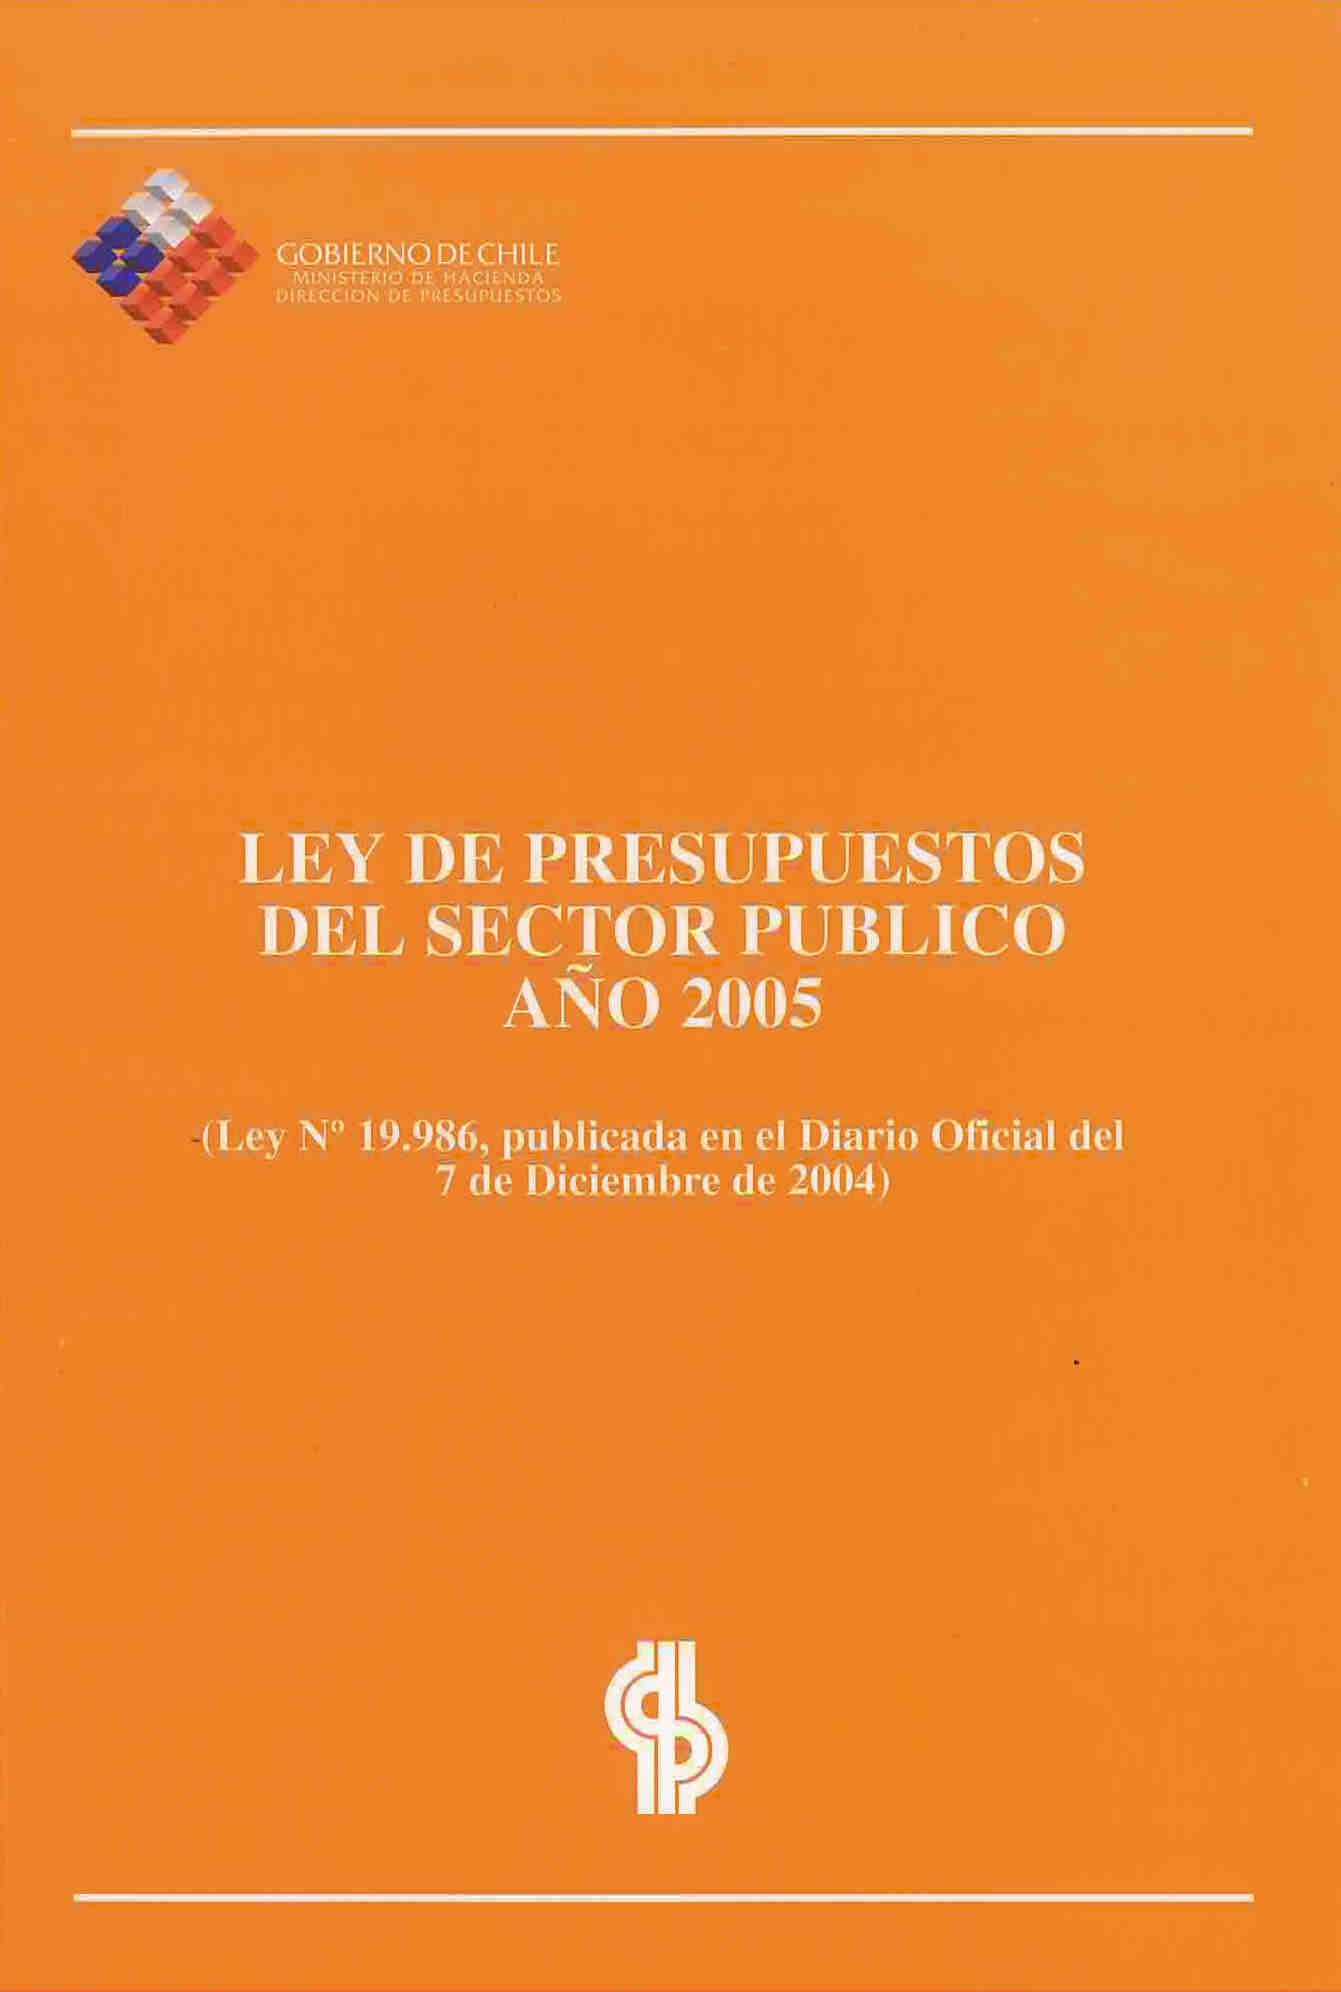 Ley de presupuestos del sector público año 2005: Ley publicada en el diario Oficial del 7 de diciembre de 2004